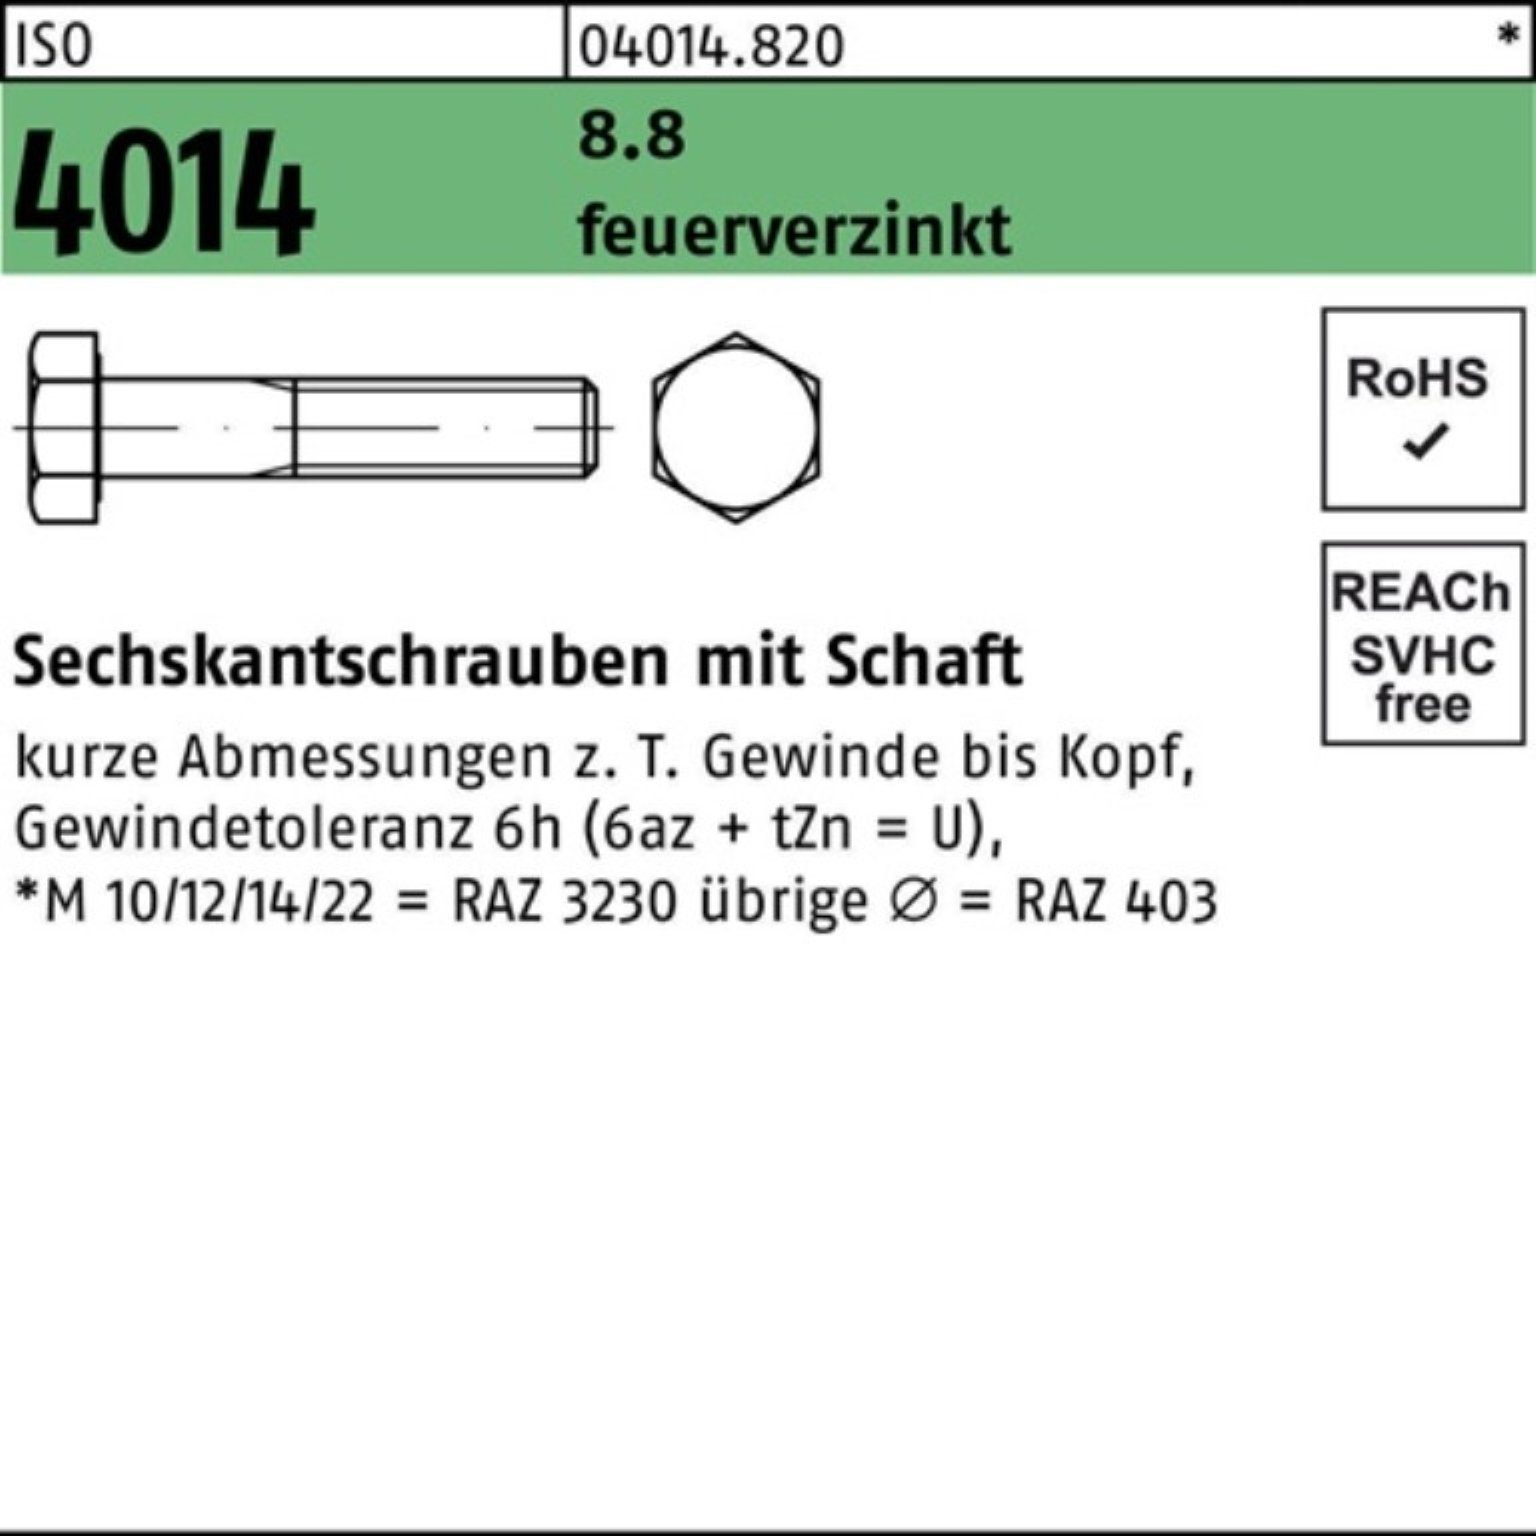 Bufab Sechskantschraube 100er Pack Sechskantschraube ISO 4014 Schaft M16x 130 8.8 feuerverz. 2